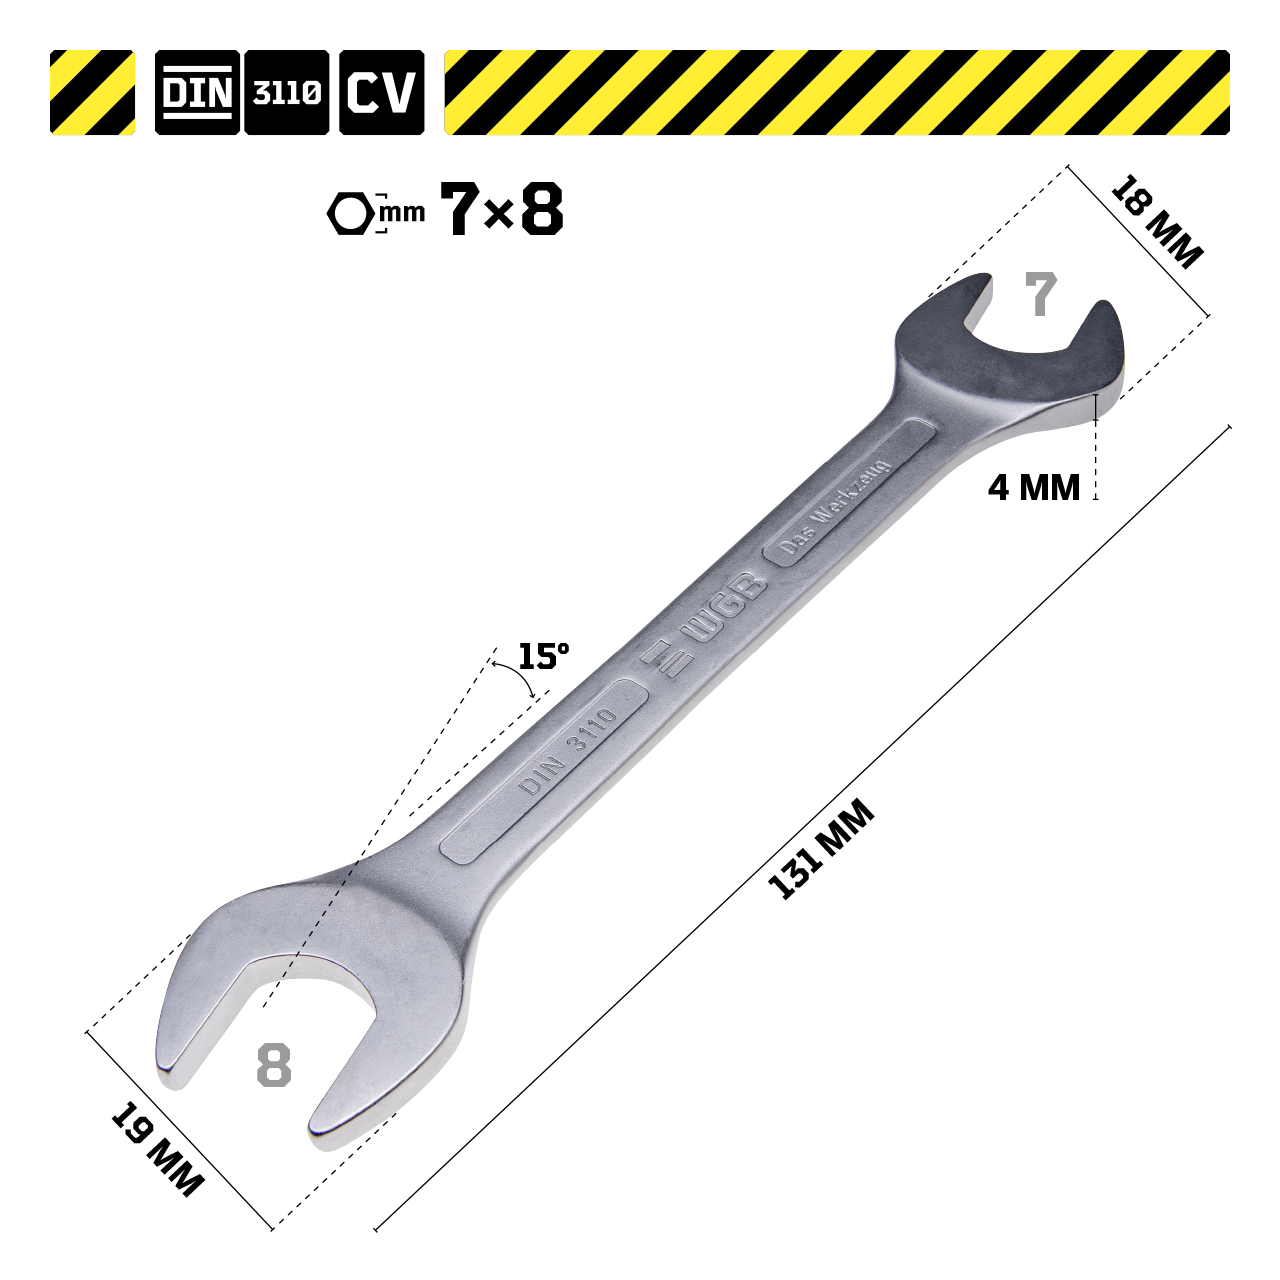 > The 3110 DIN WGB > Werkzeug | Doppelmaulschlüssel, - Produkte Schraubenschlüssel